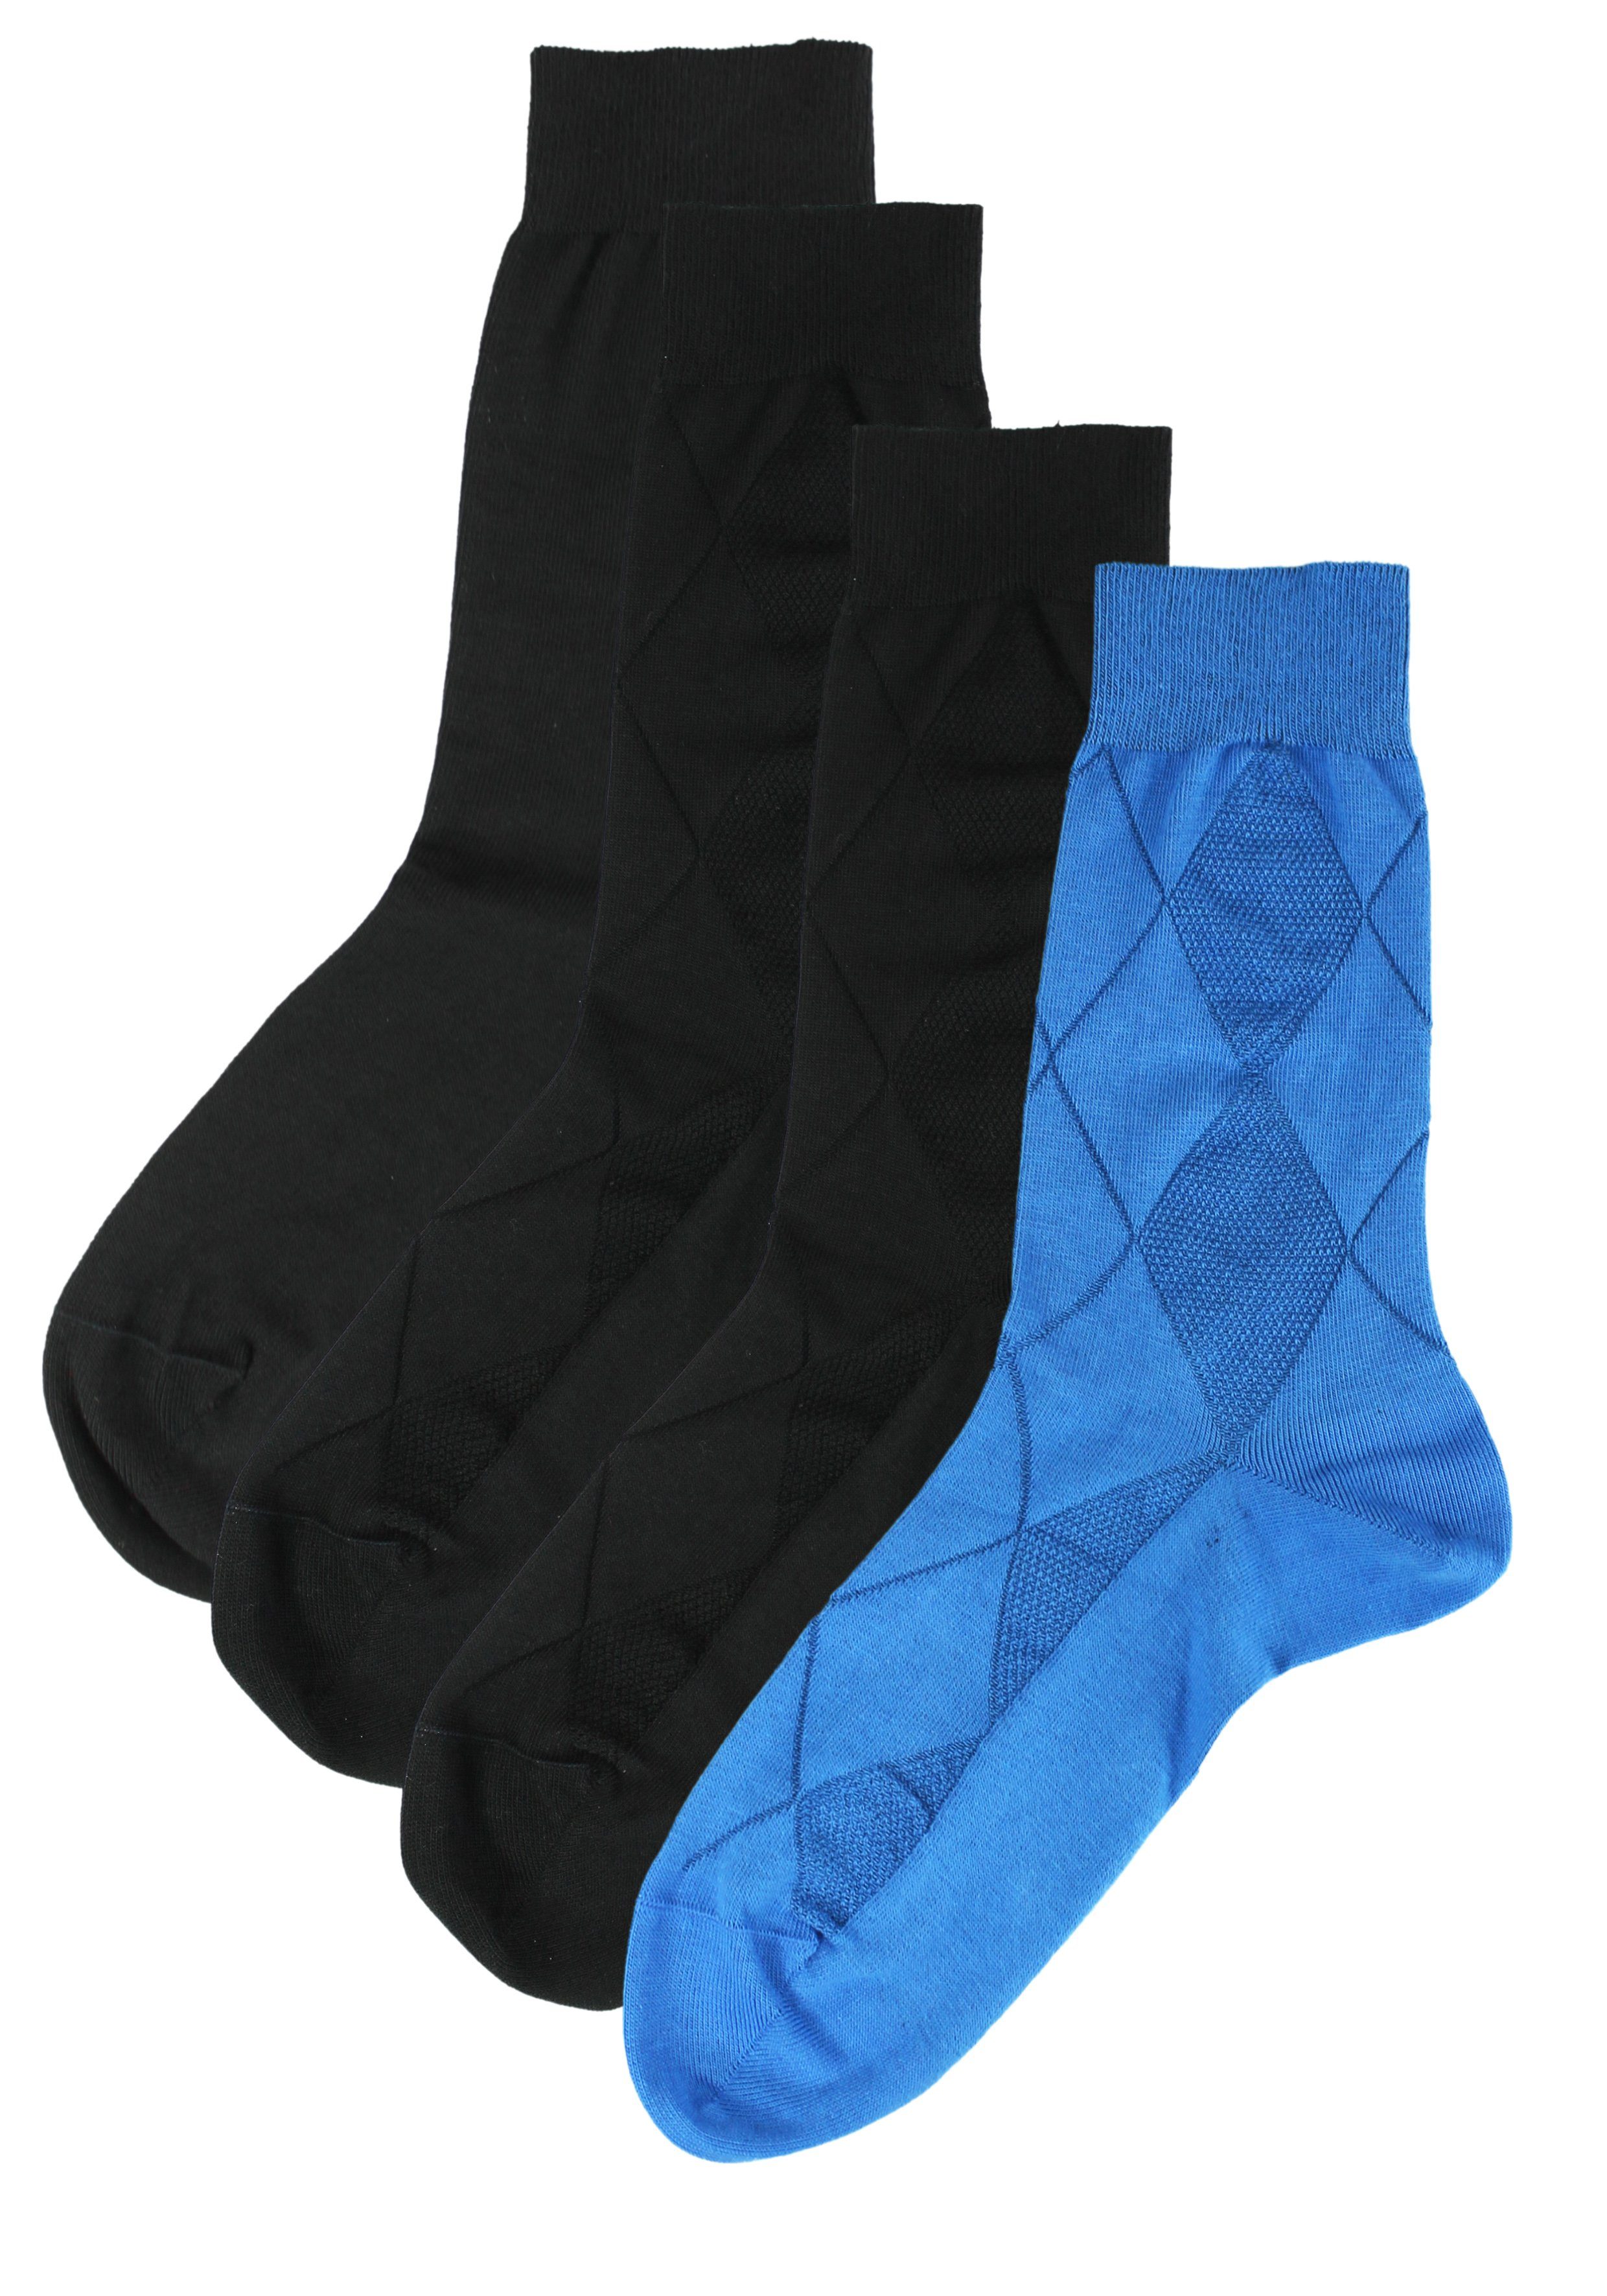 Rogo Socken Strukturen (4-Paar) mit Strukturmuster blau, schwarz